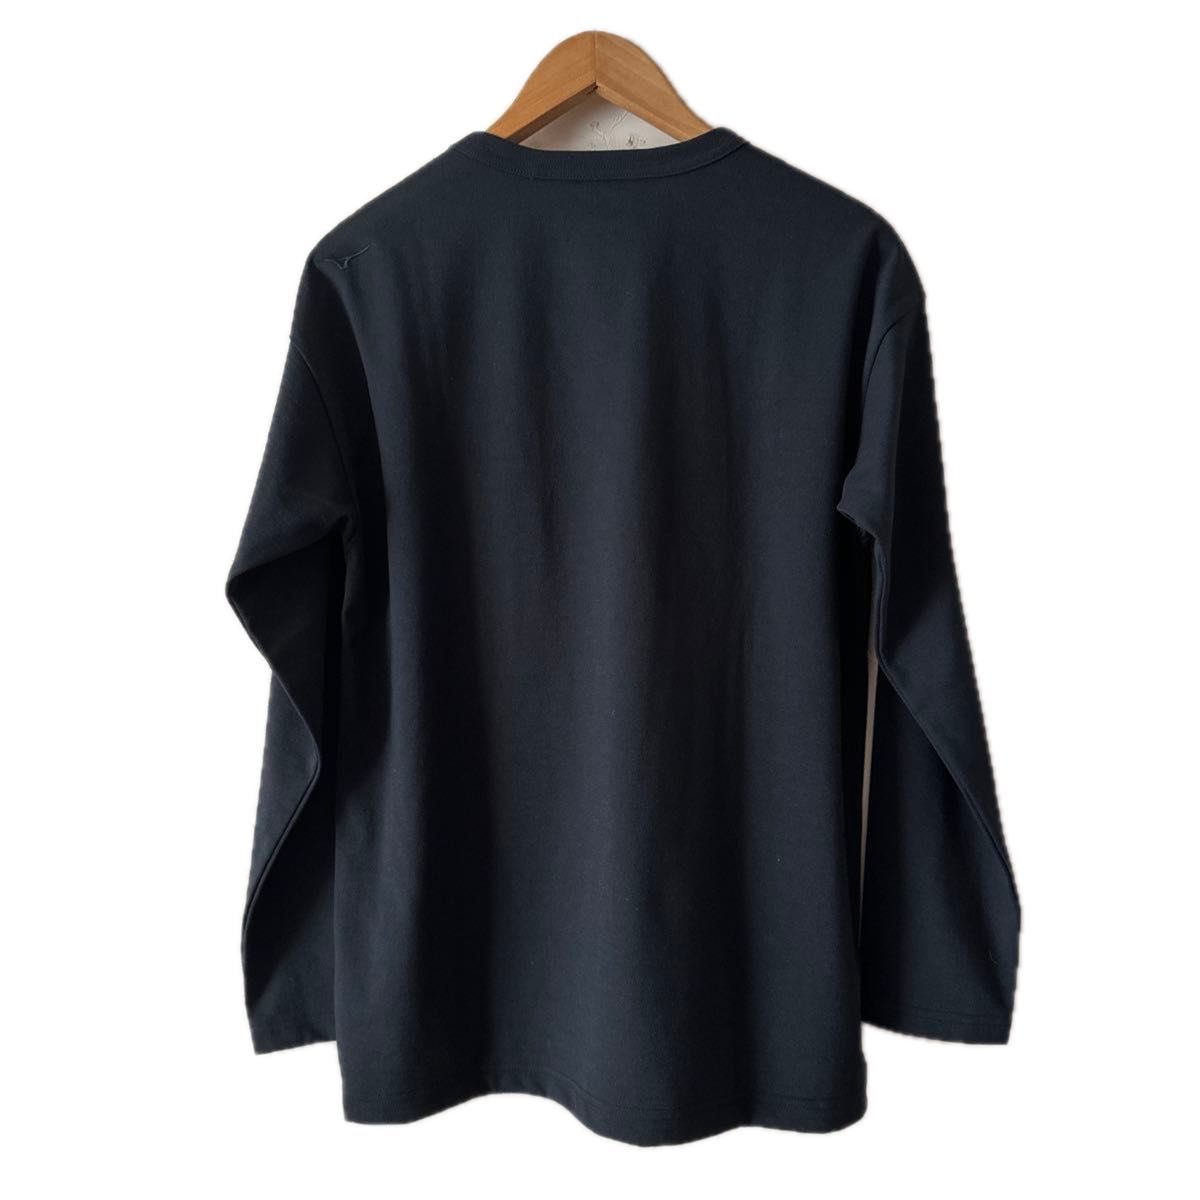 MIZUNO ミズノ メンズロングスリーブクルーネックTシャツ USED XS 大きめ 濃紺 美品 ブラック刺繍ロゴ